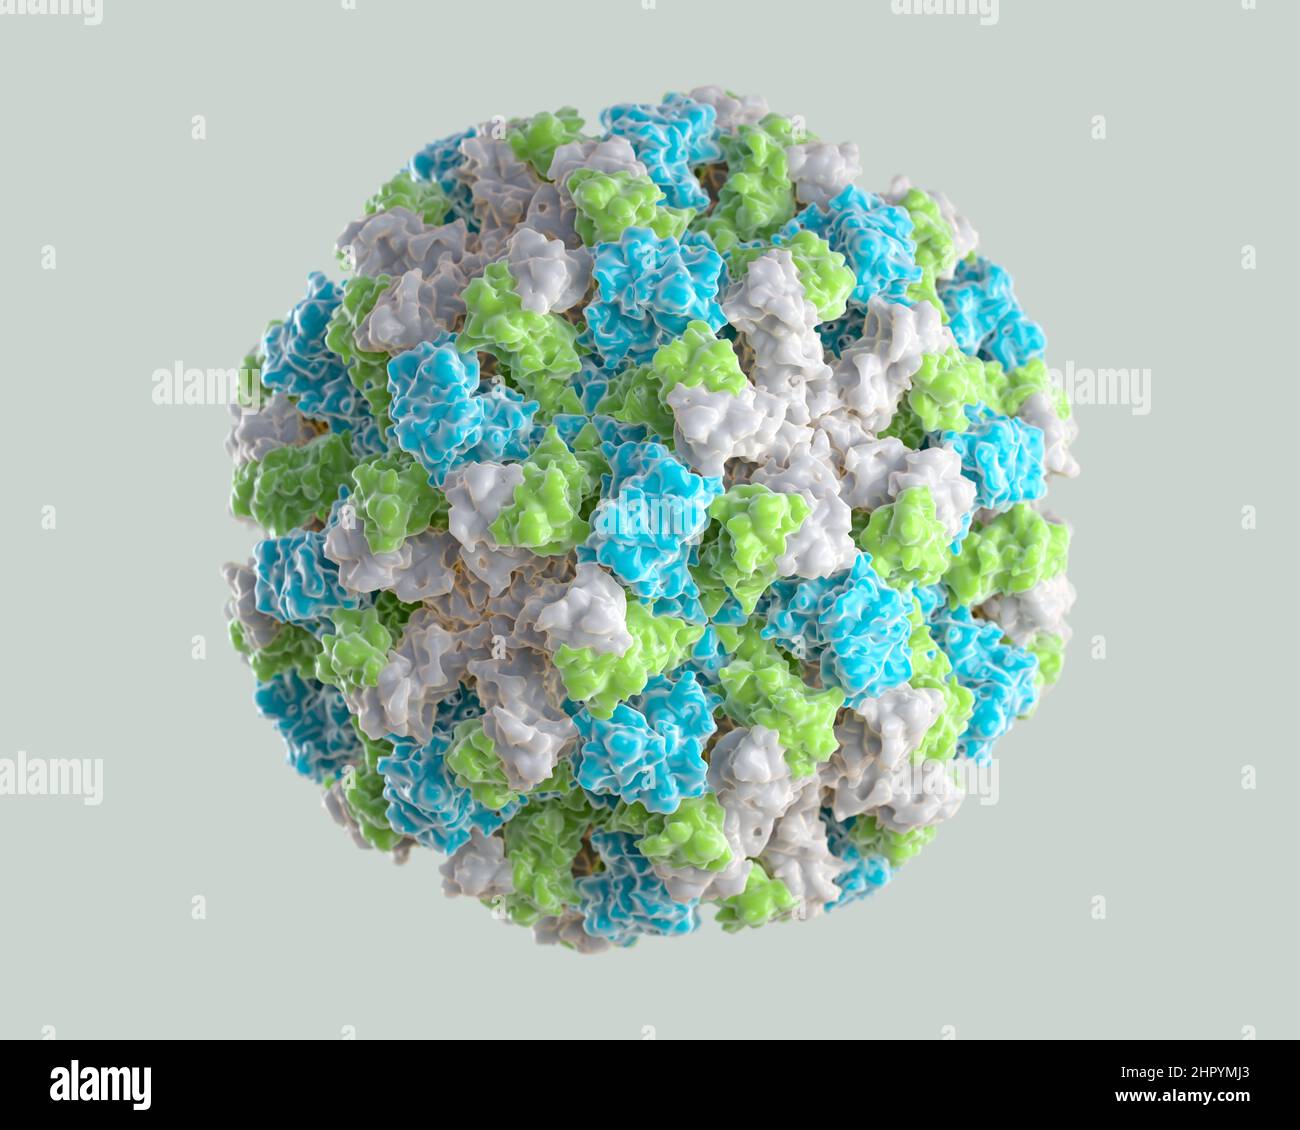 3D Representación gráfica de un solo virión norovirus. Los diferentes colores representan diferentes regiones de la capa proteica externa del organismo, o c Foto de stock